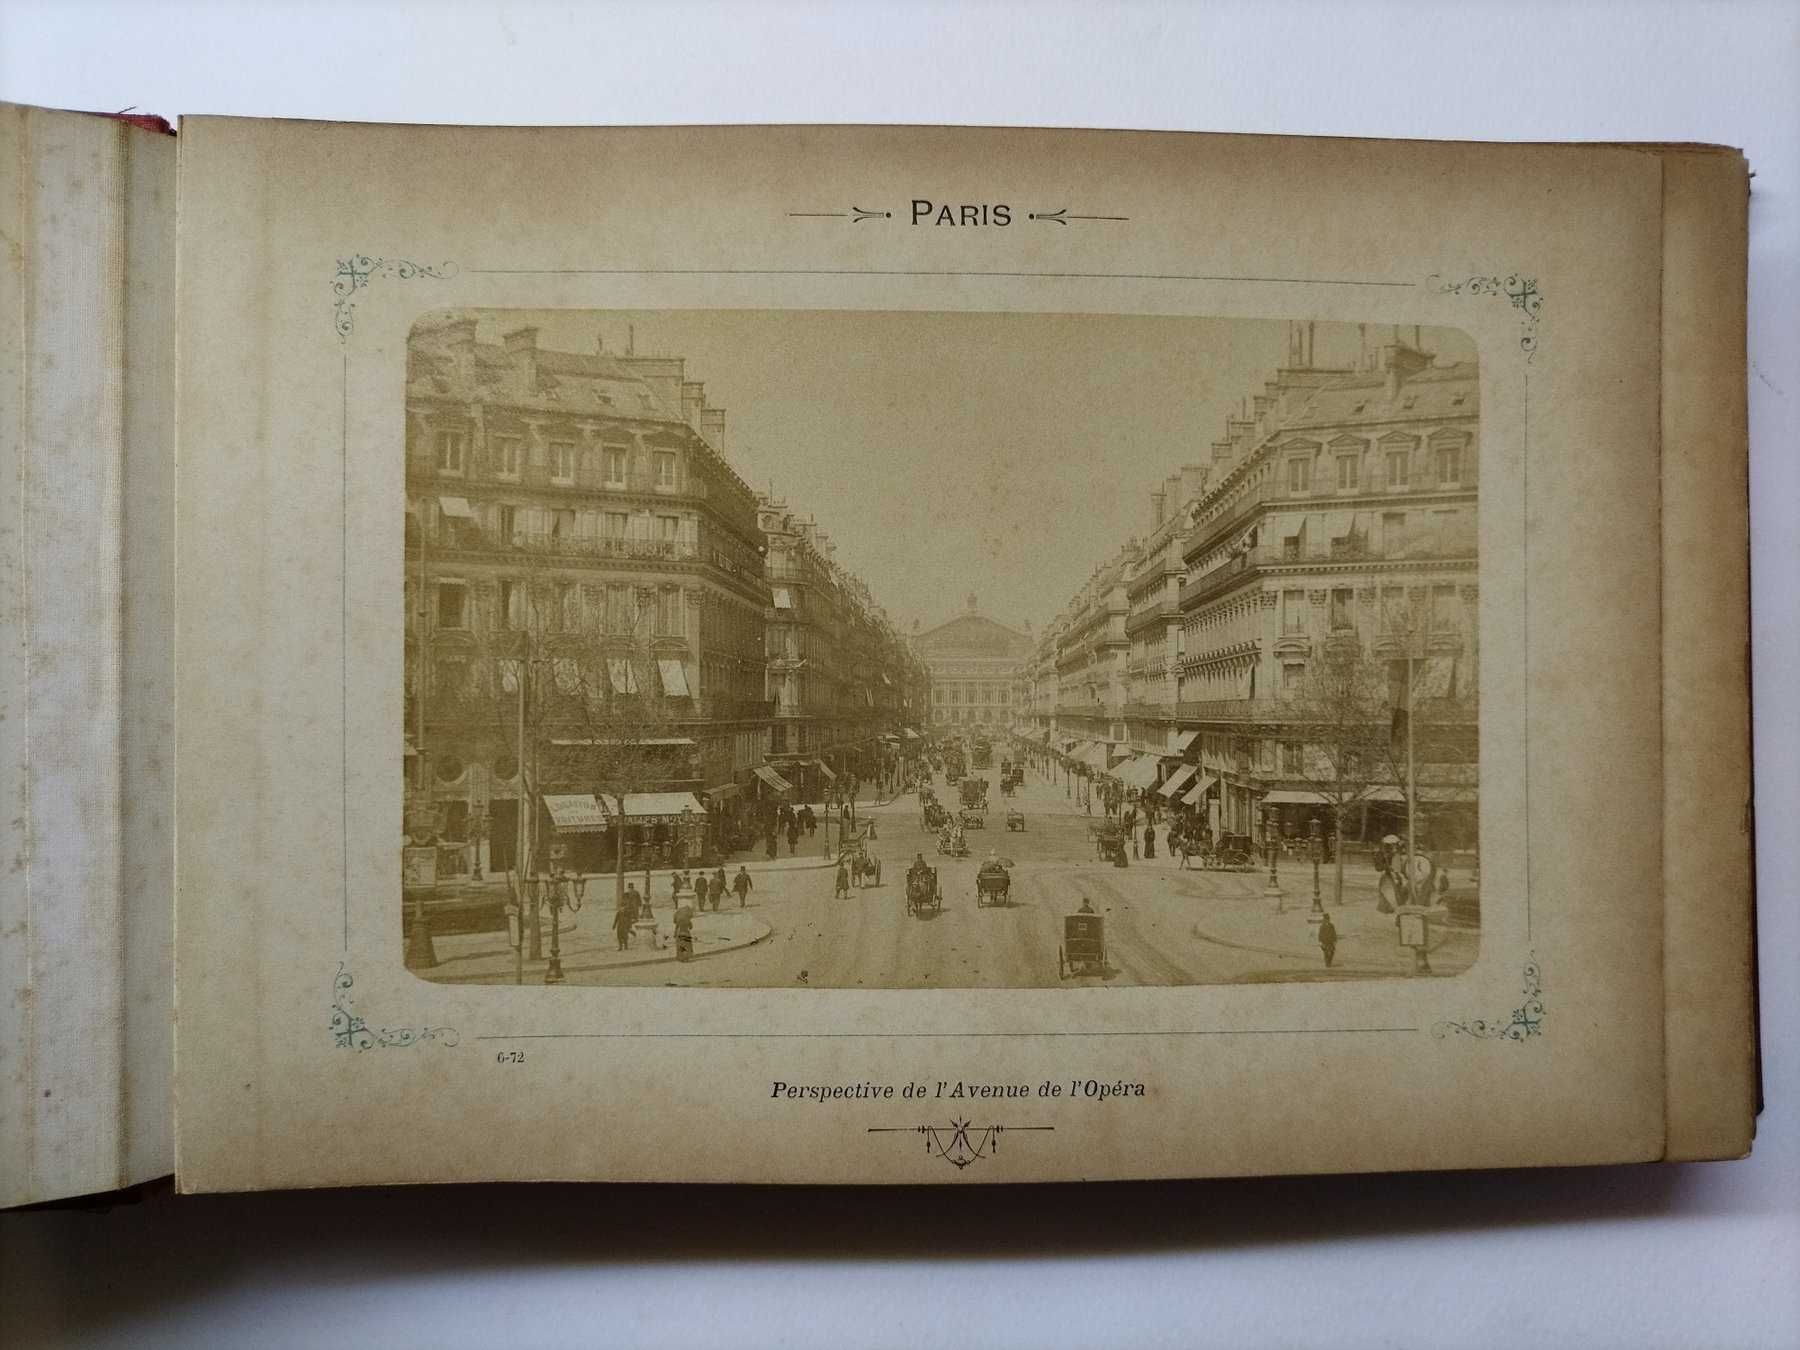 Álbum profissional de autor anónimo com 36 fotos de Paris, em 1889.